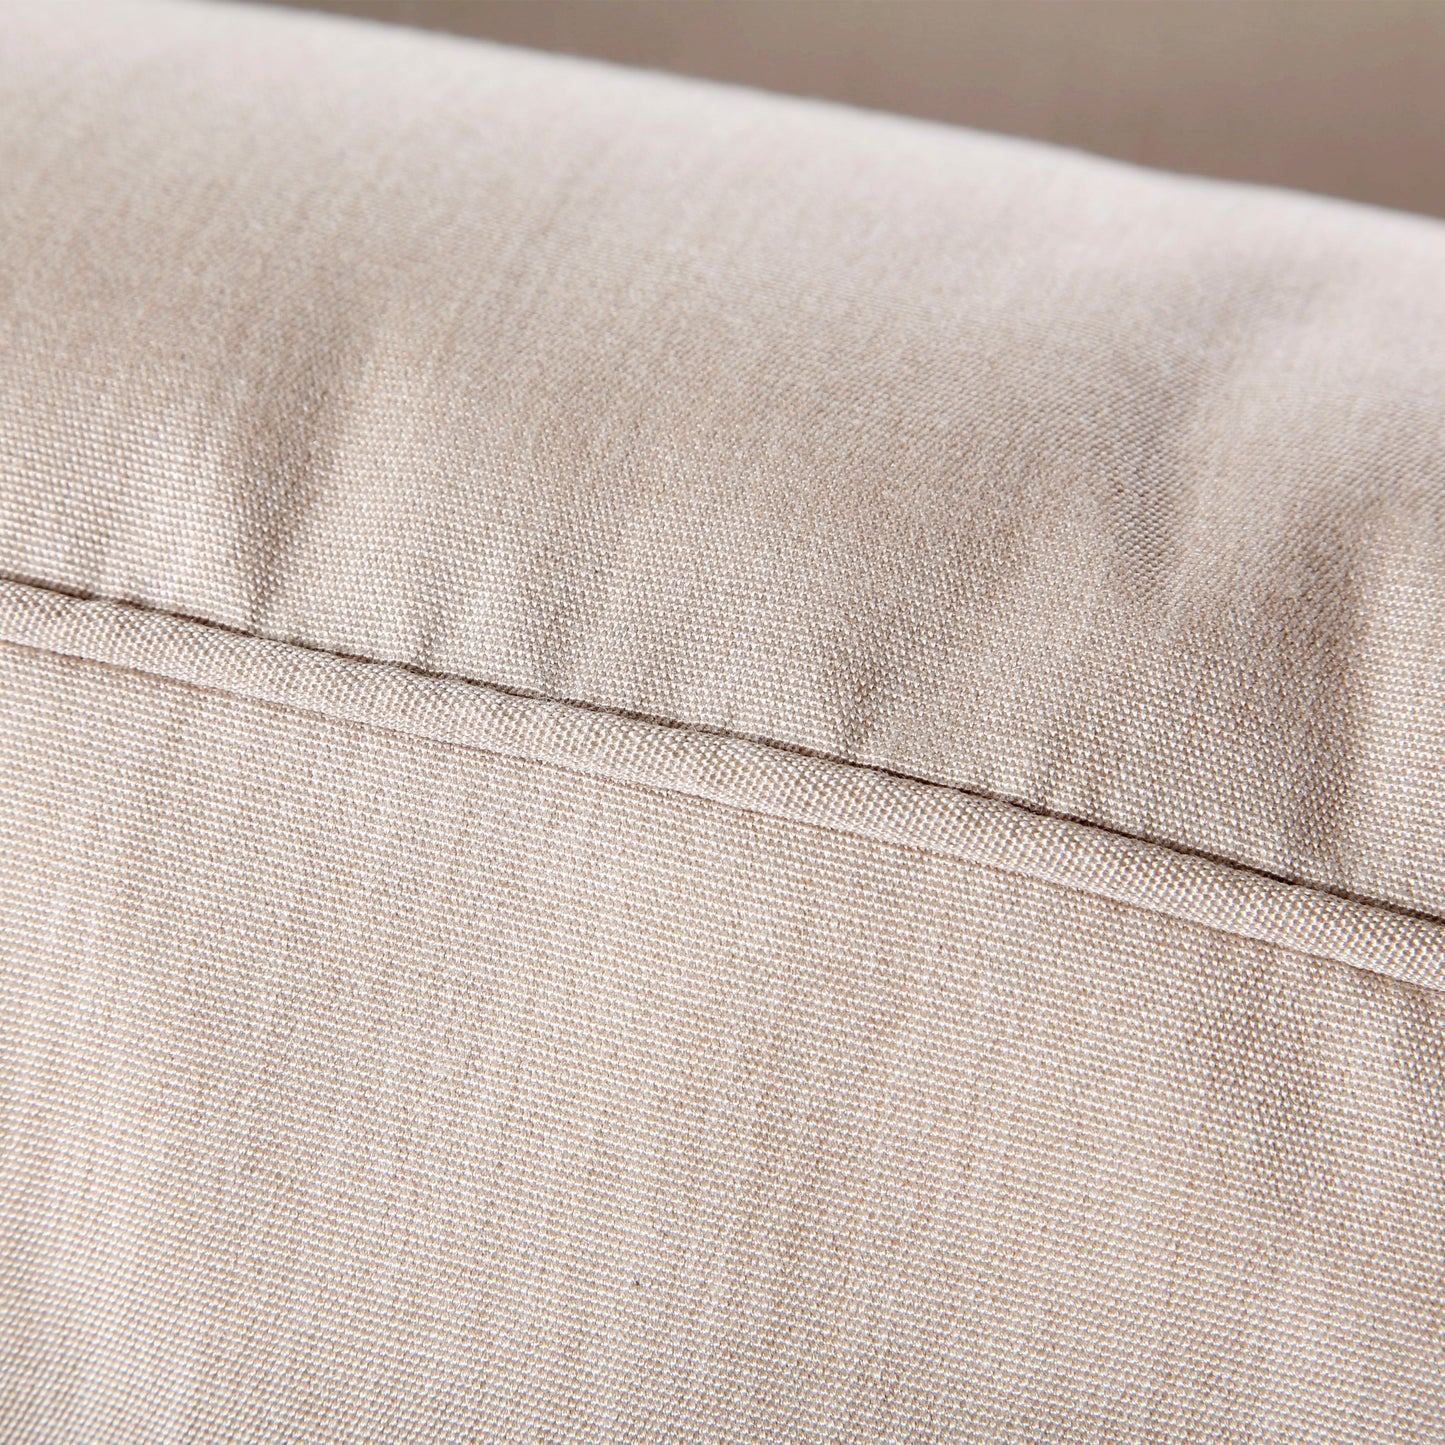 Oak Grove Sofa Canvas Flax Cushion Detail, image 5